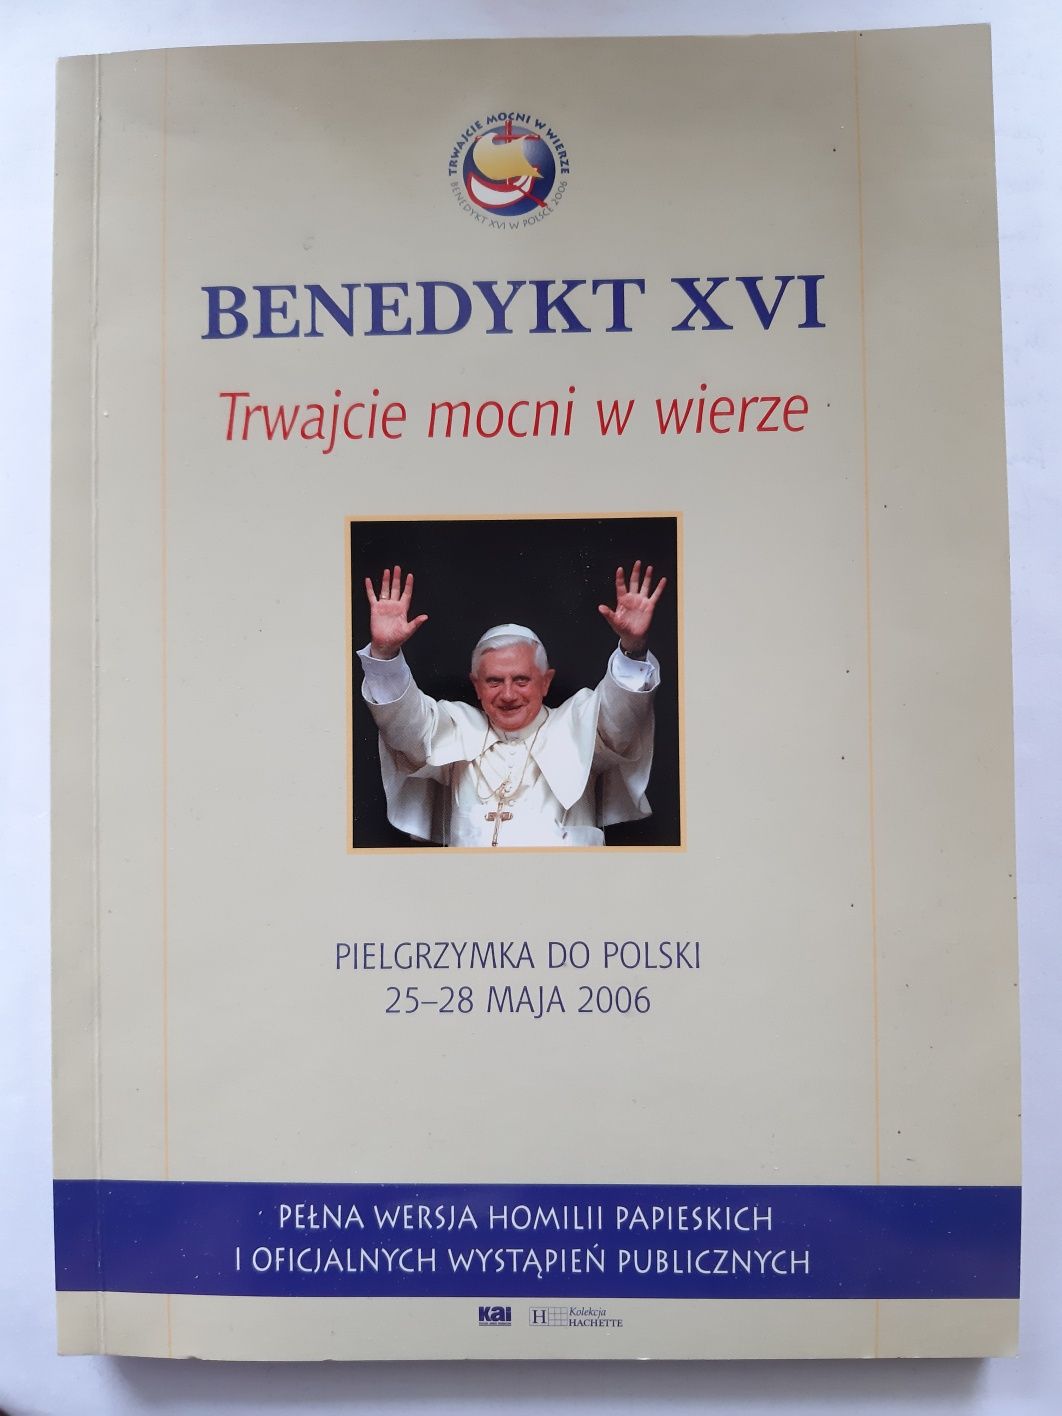 Trwajcie mocni w wierze, Benedykt XVI, pielgrzymka do Polski maj 2006